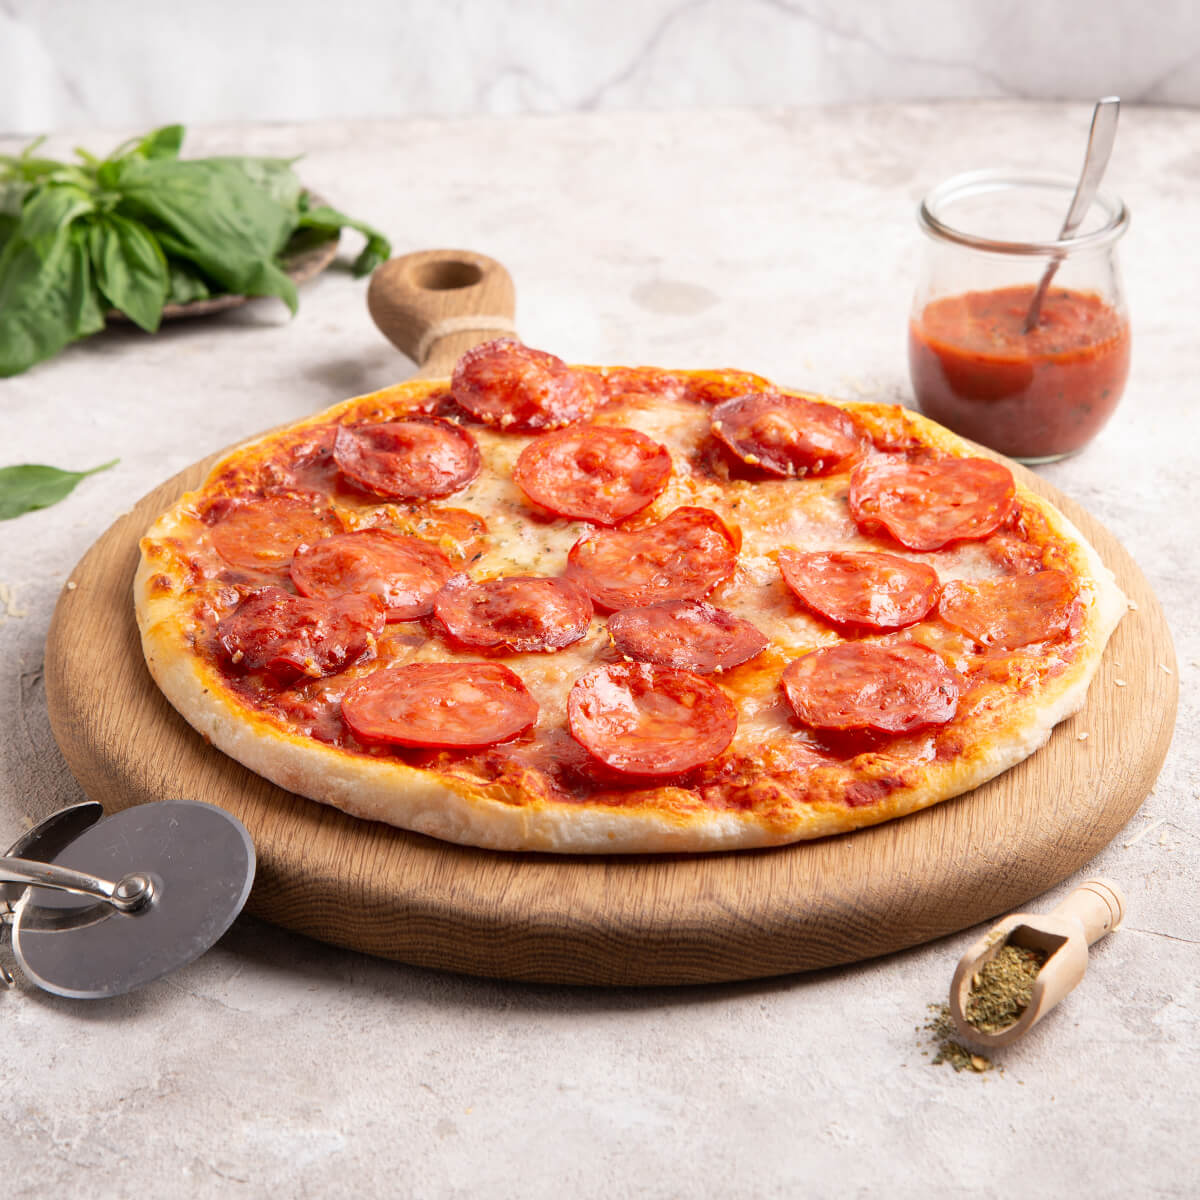 я хочу пиццу с перцем луком пепперони и оливками фото 45